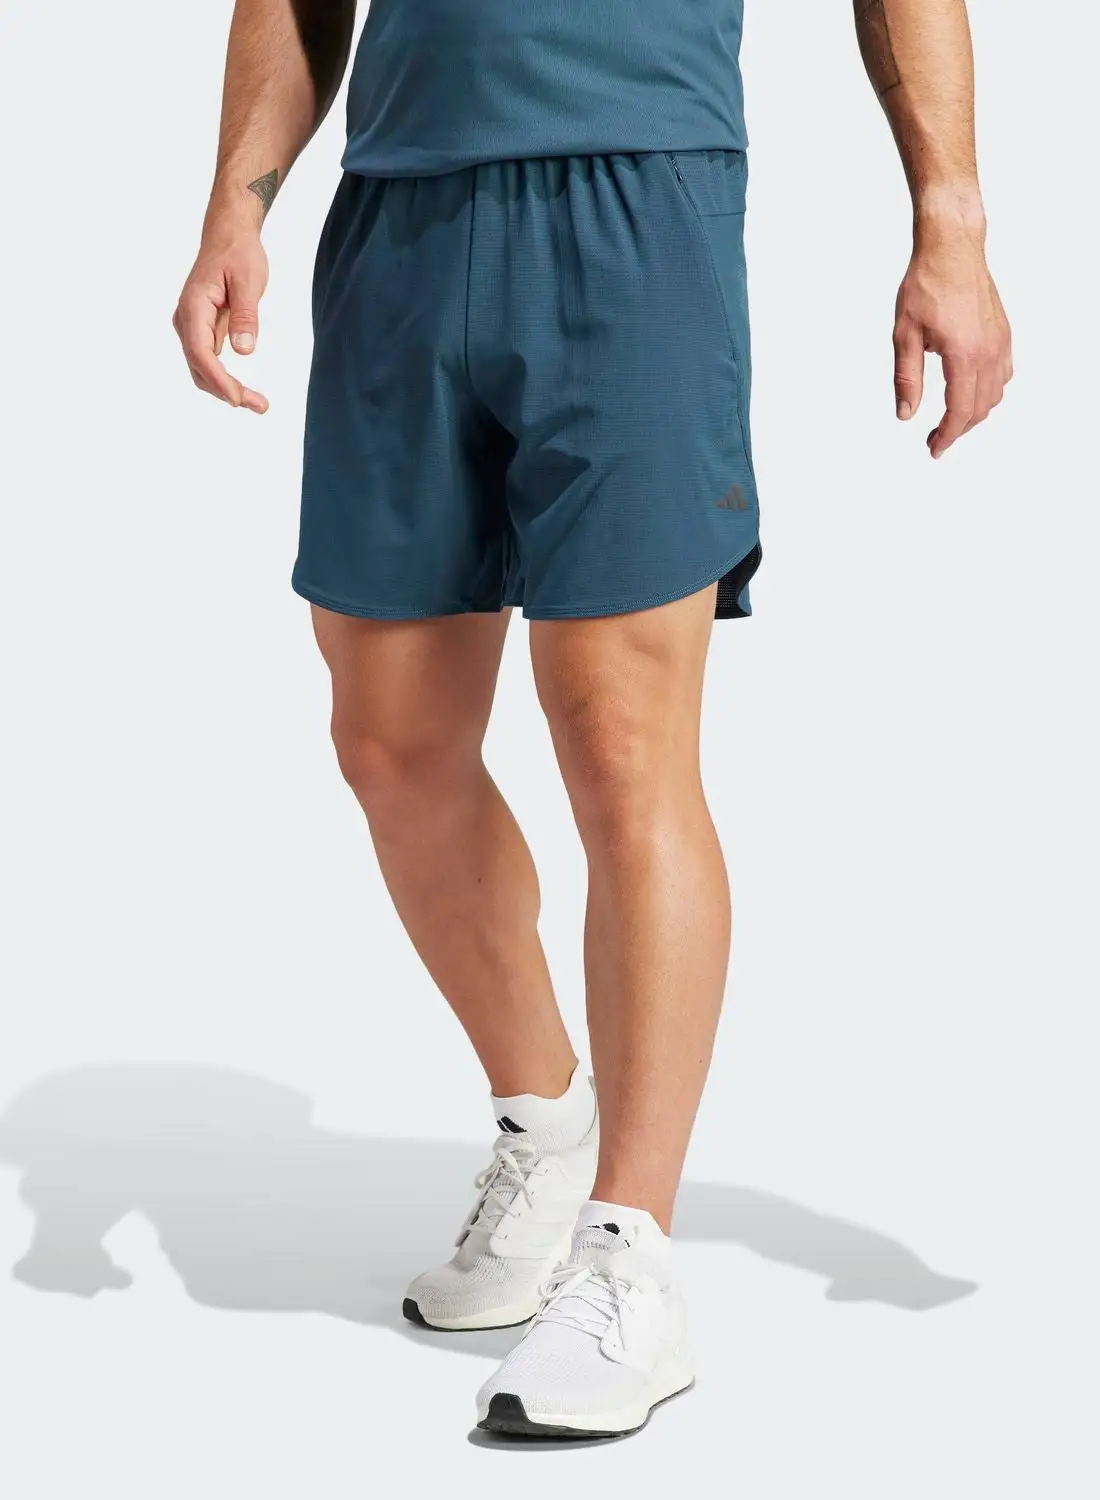 Adidas Designed For Training Hiit Training Shorts